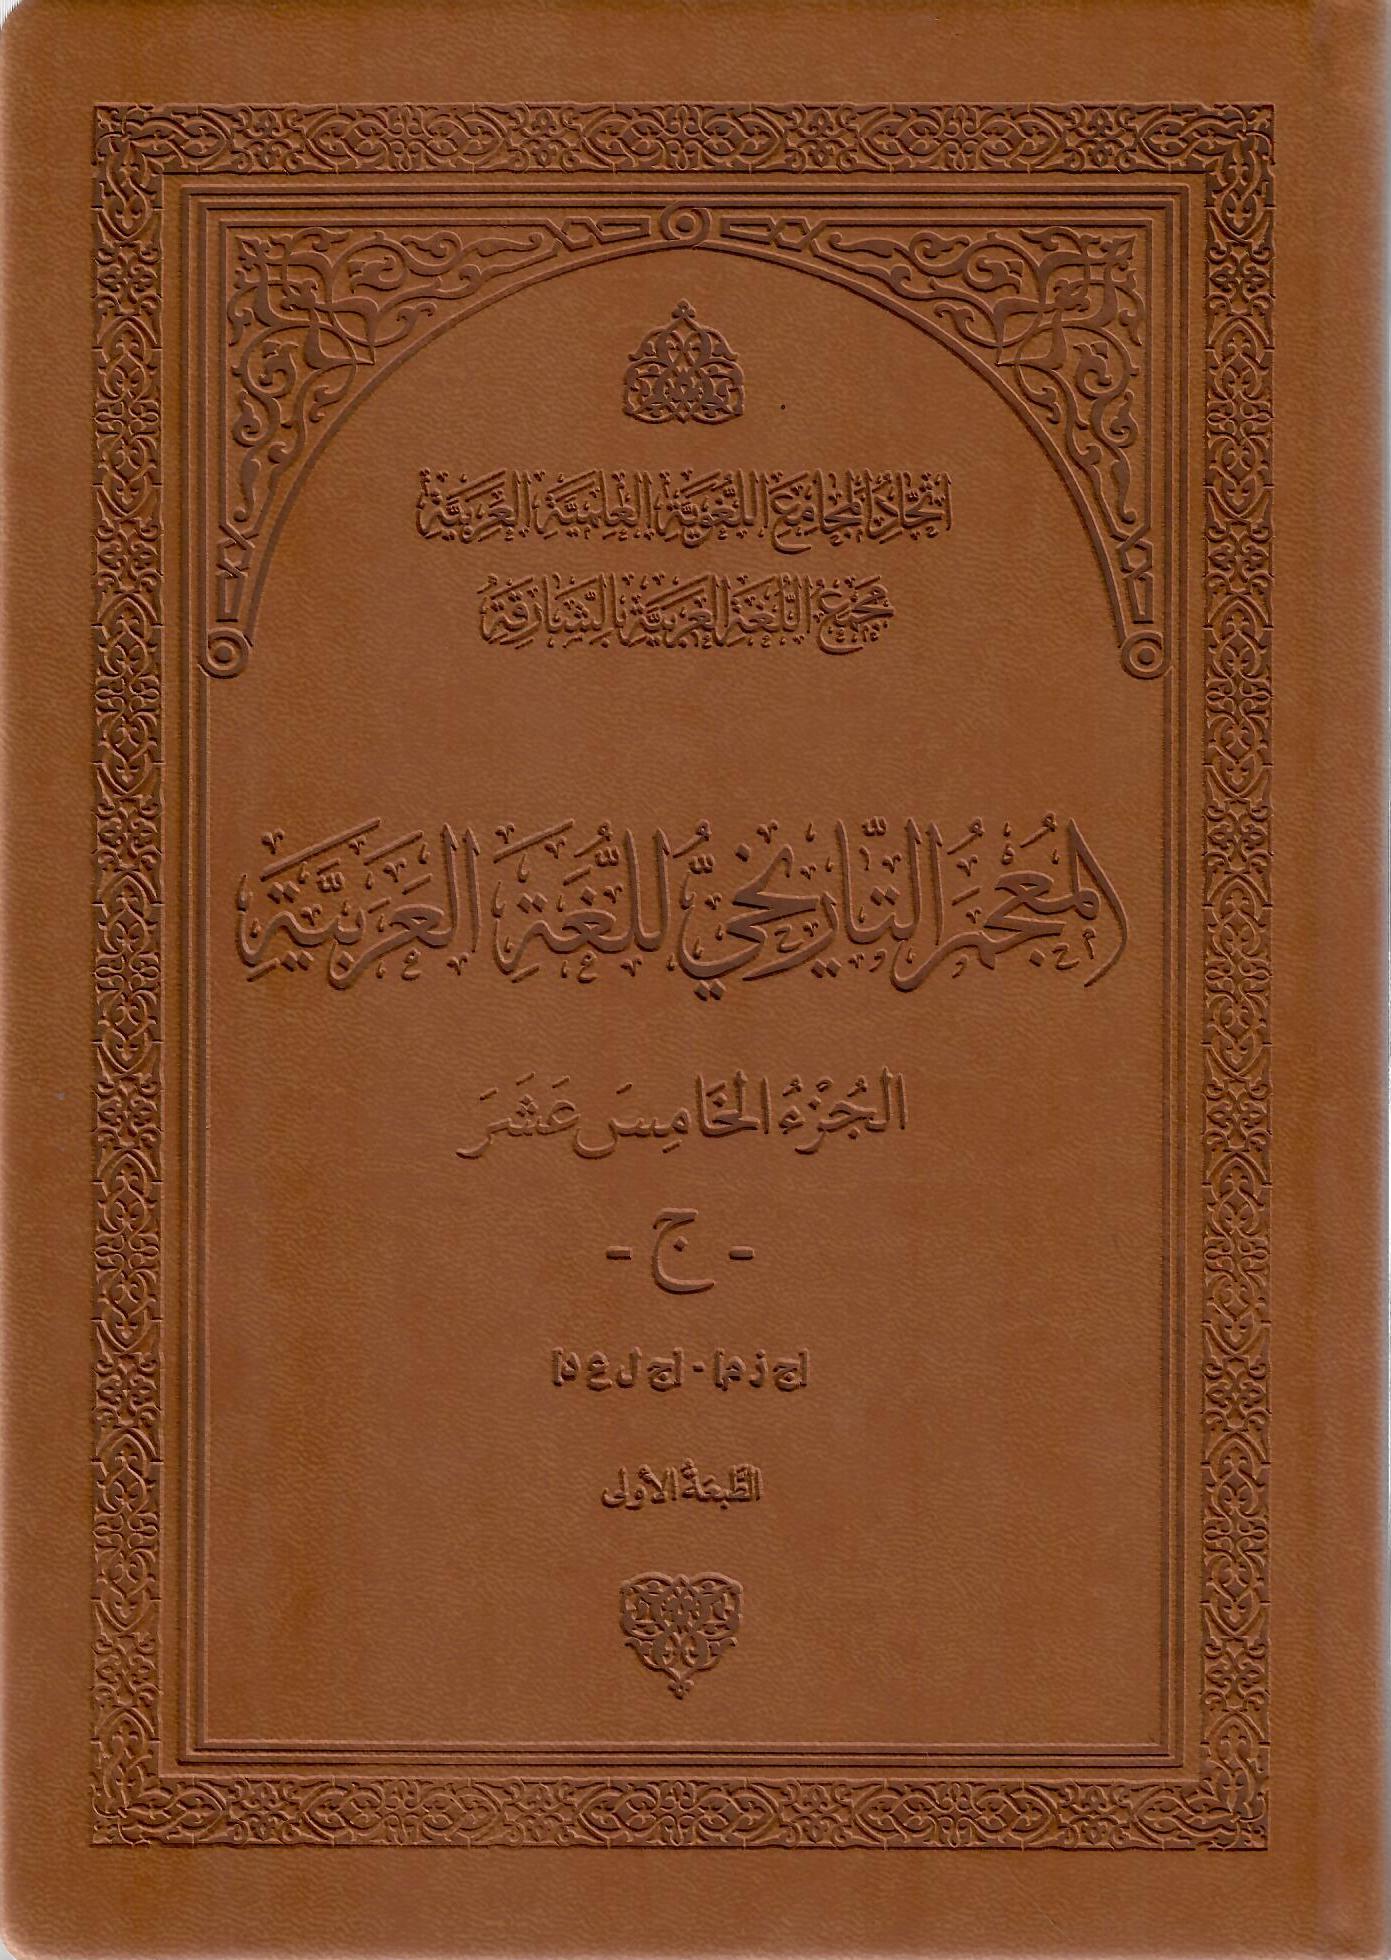 المعجم التاريخي للغة العربية الجزء الخامس عشر